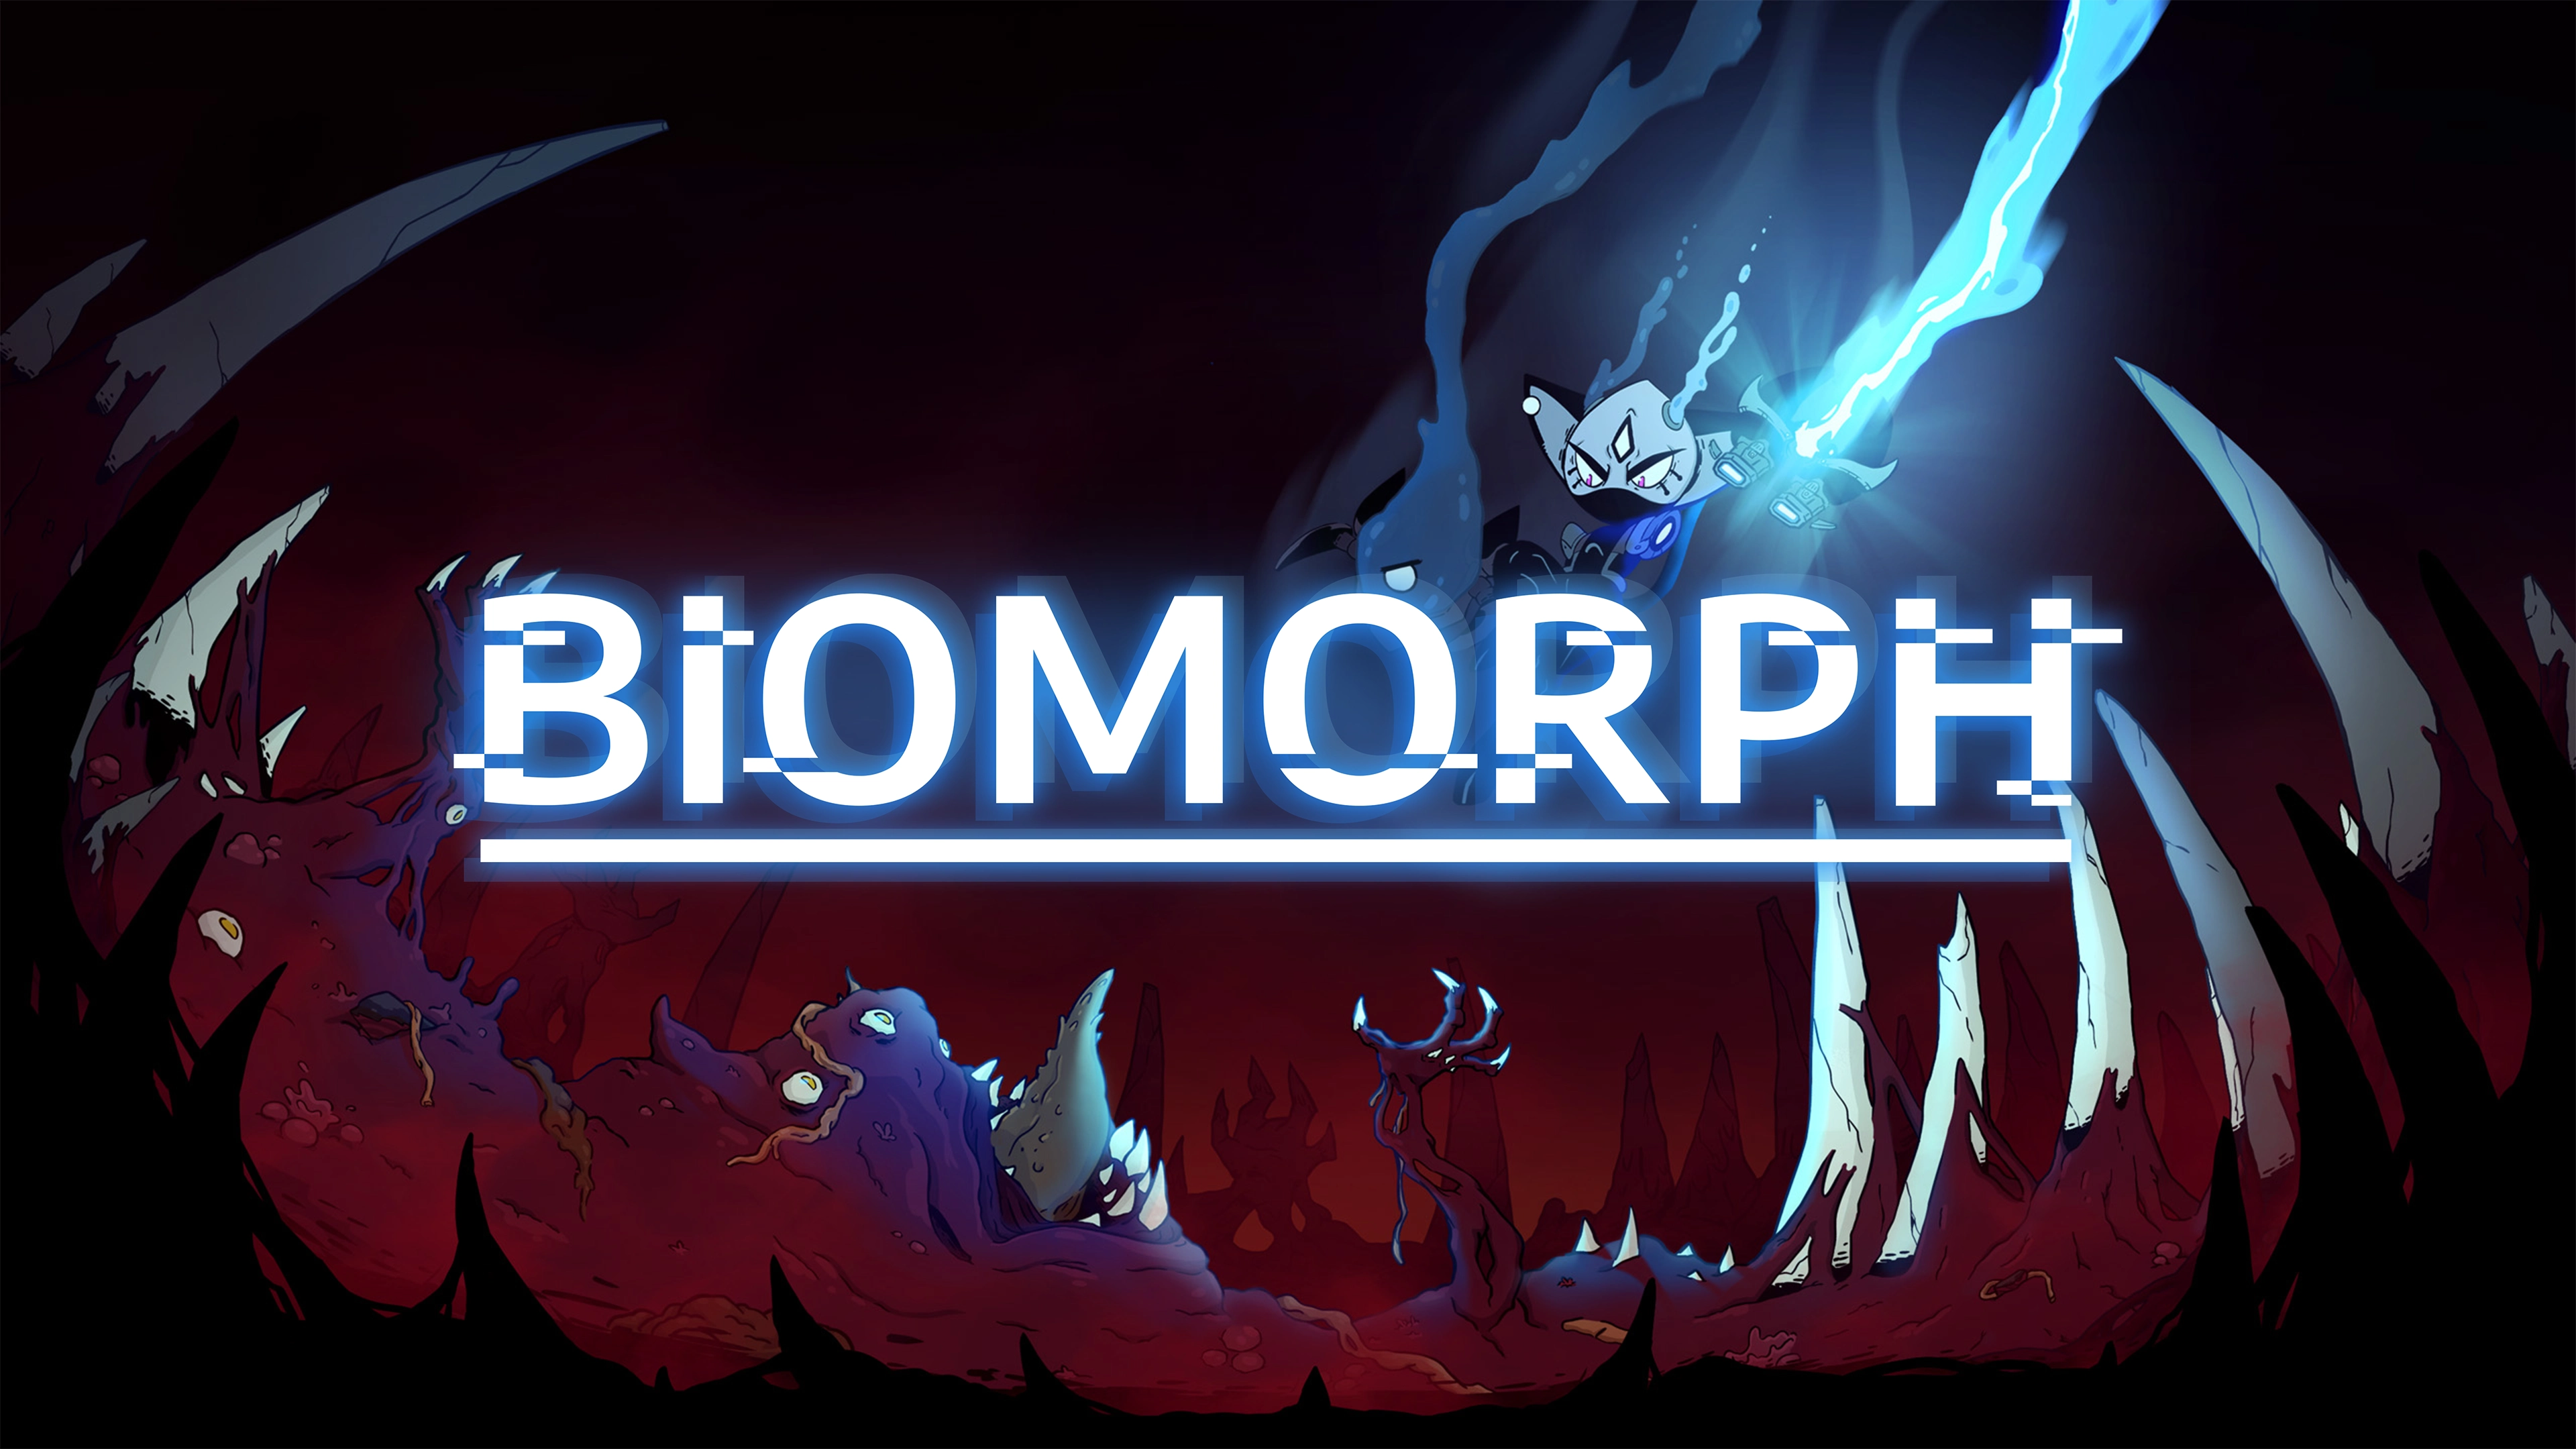 Vedd birtokba ellenfeleid erejét a BIOMORPH-ban, a ma induló sötét metroidvania játékban